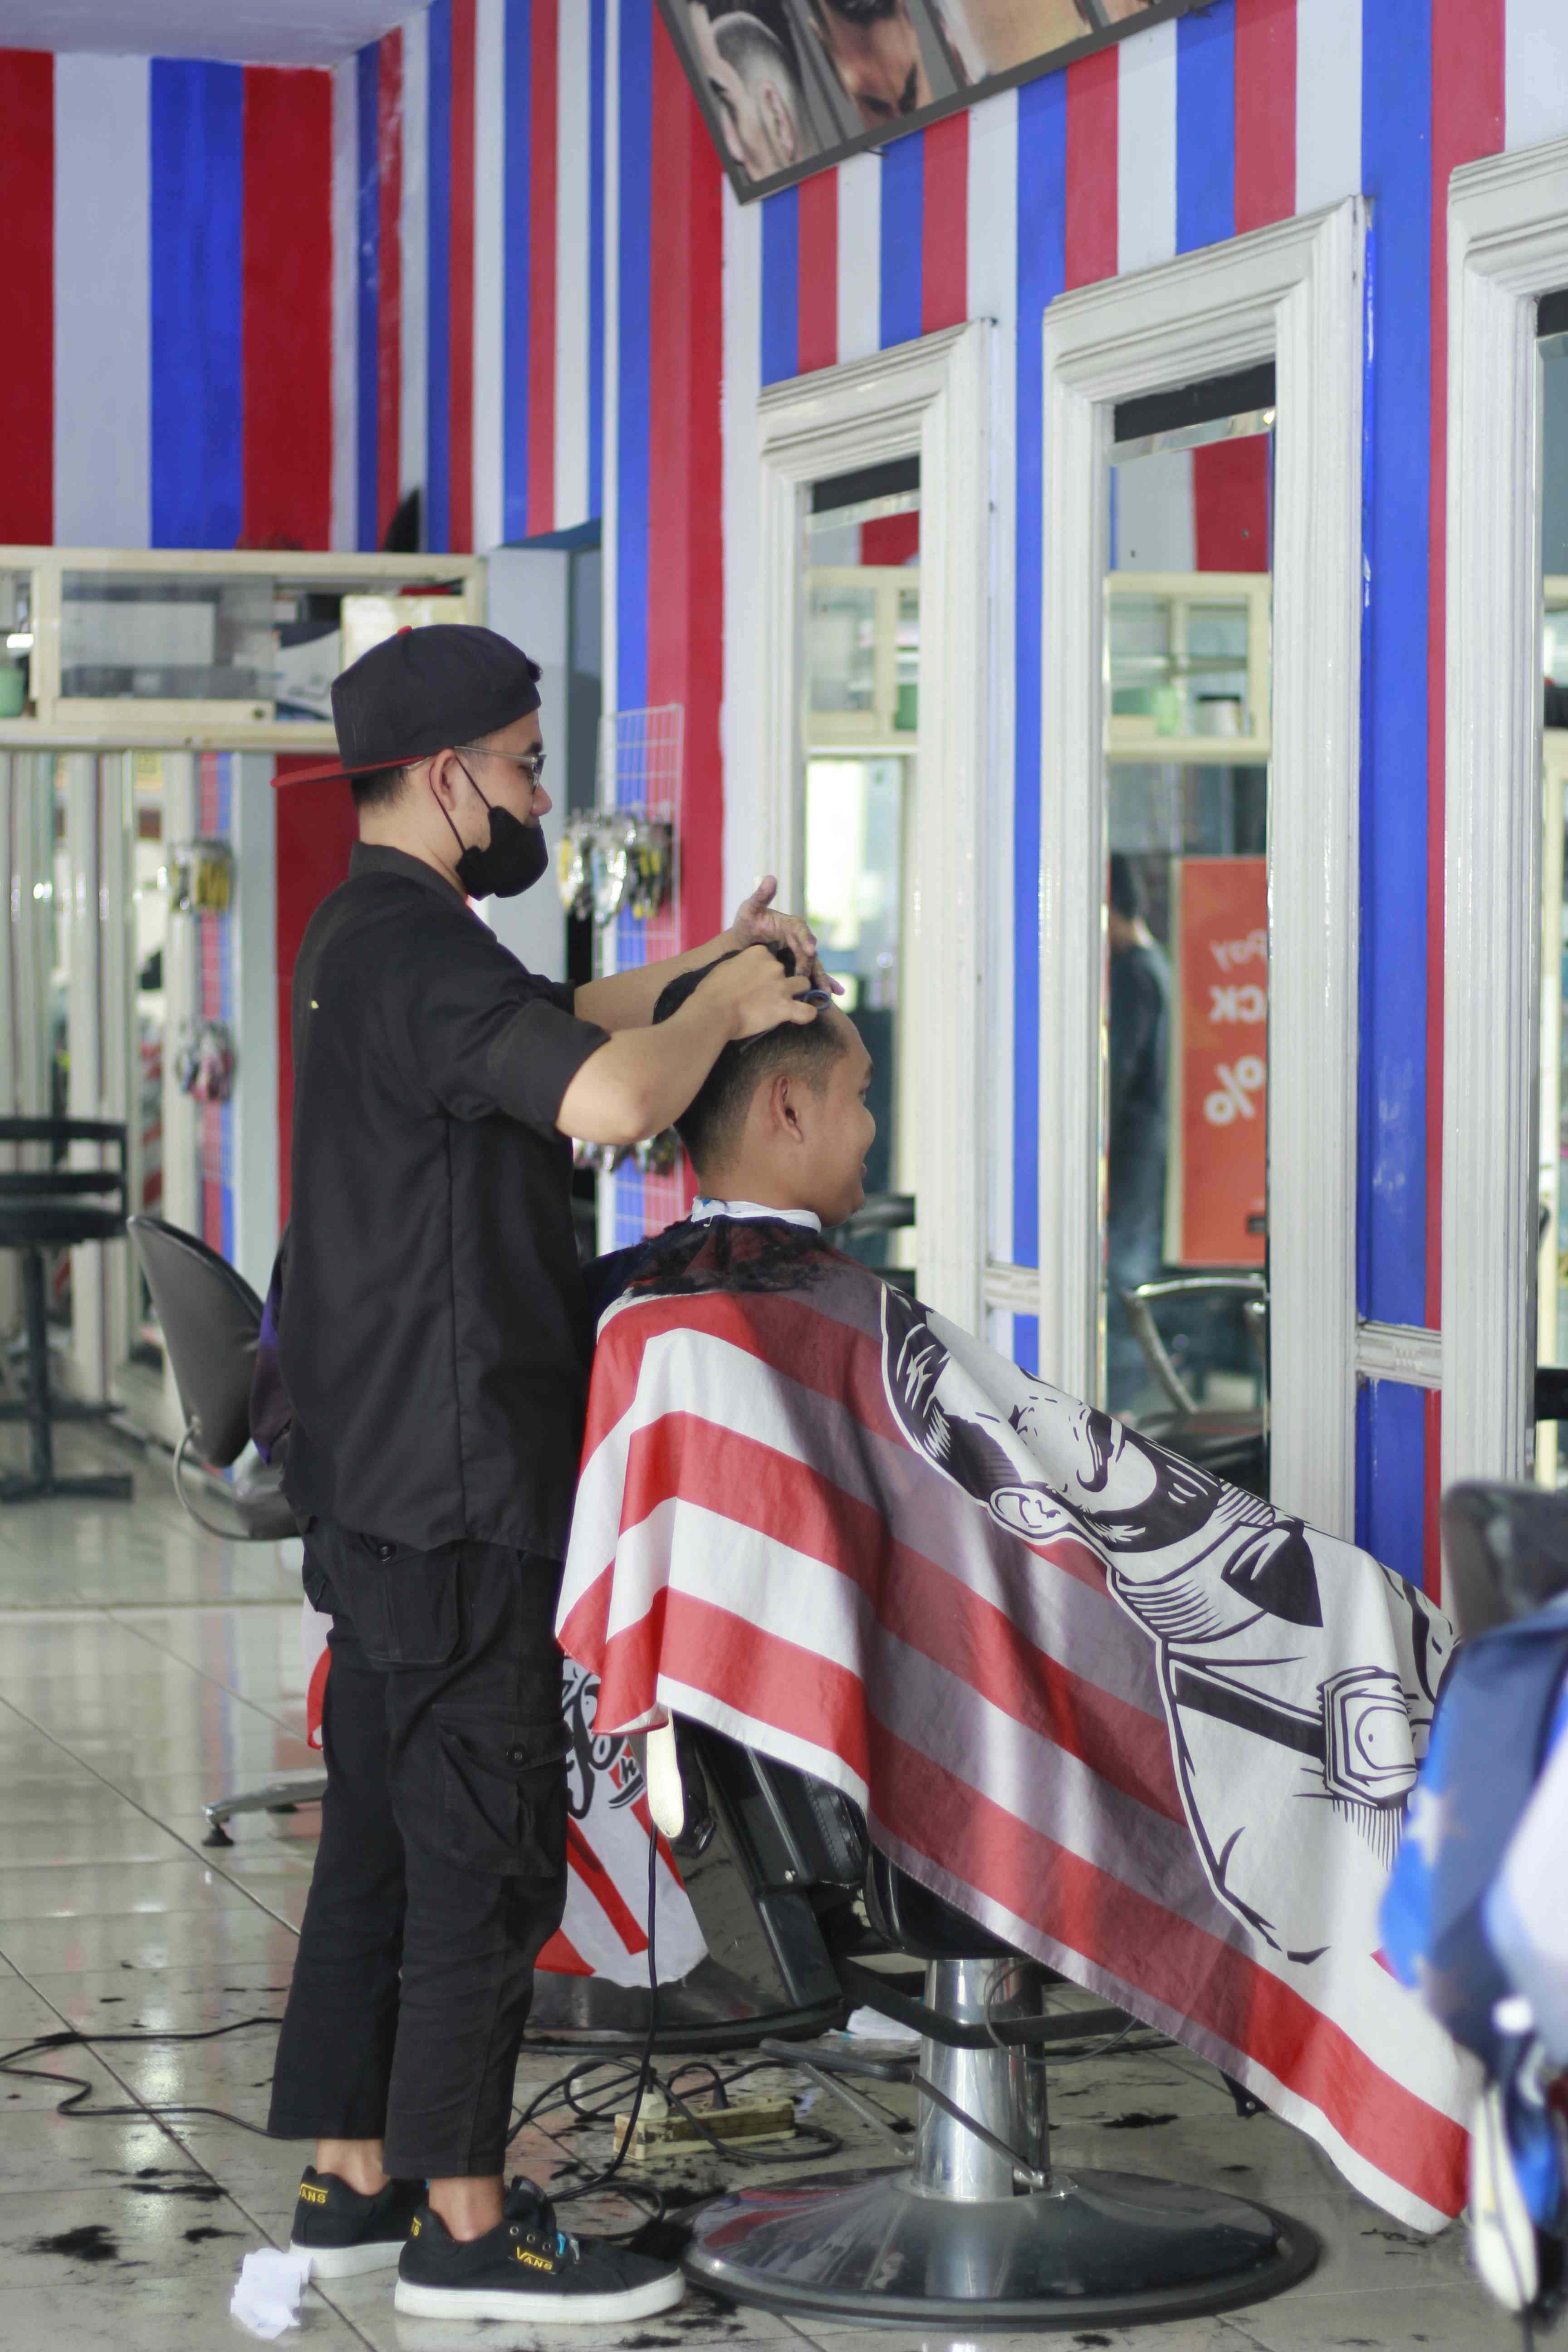 Harga Cukur Rambut Di Kecamatan Kedungkandang Profesional